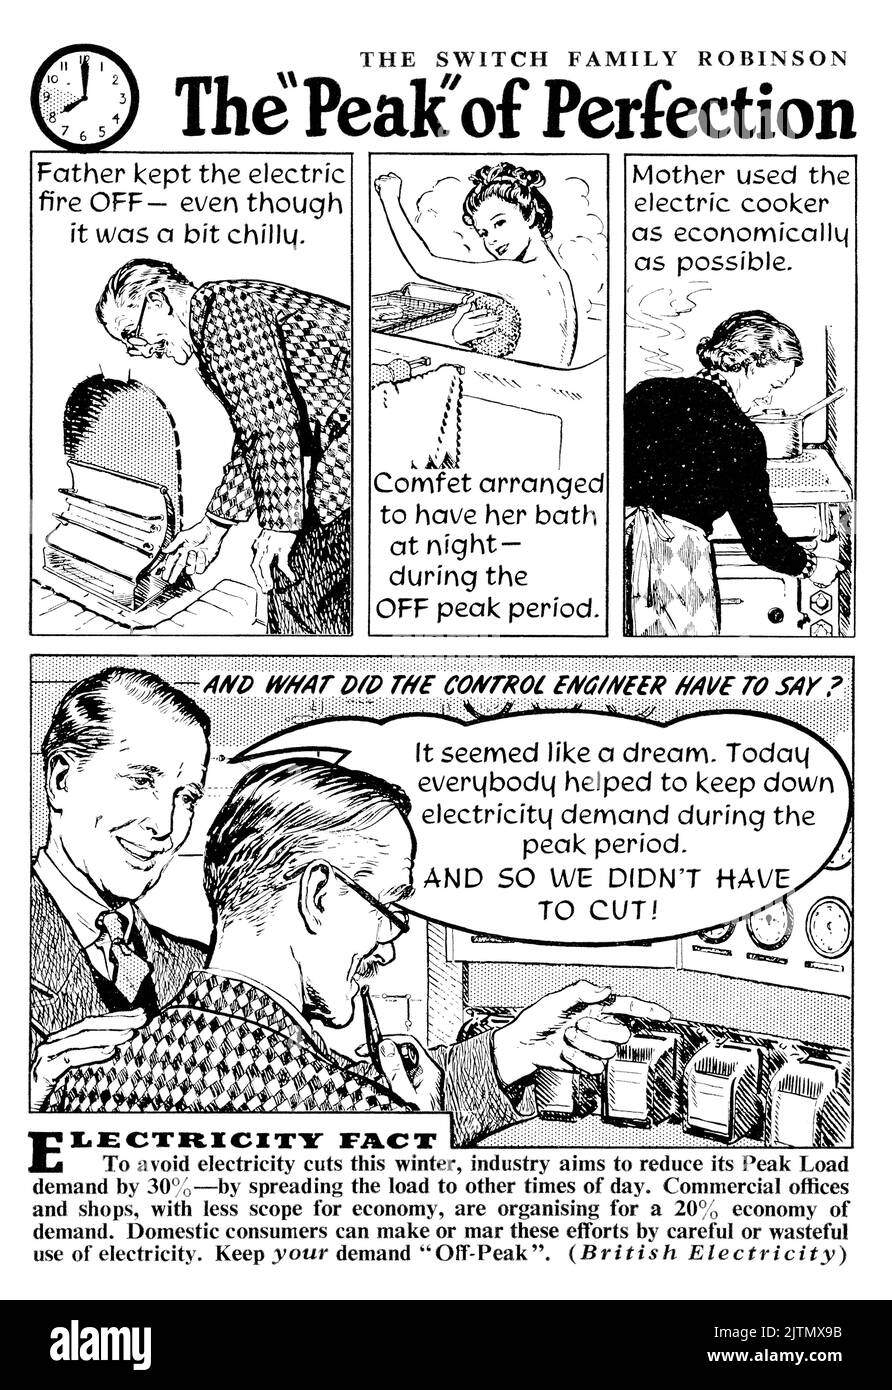 1948 publicité britannique montrant comment éviter les coupures d'électricité en répartissant la charge et en utilisant moins d'électricité pendant les heures creuses. Banque D'Images